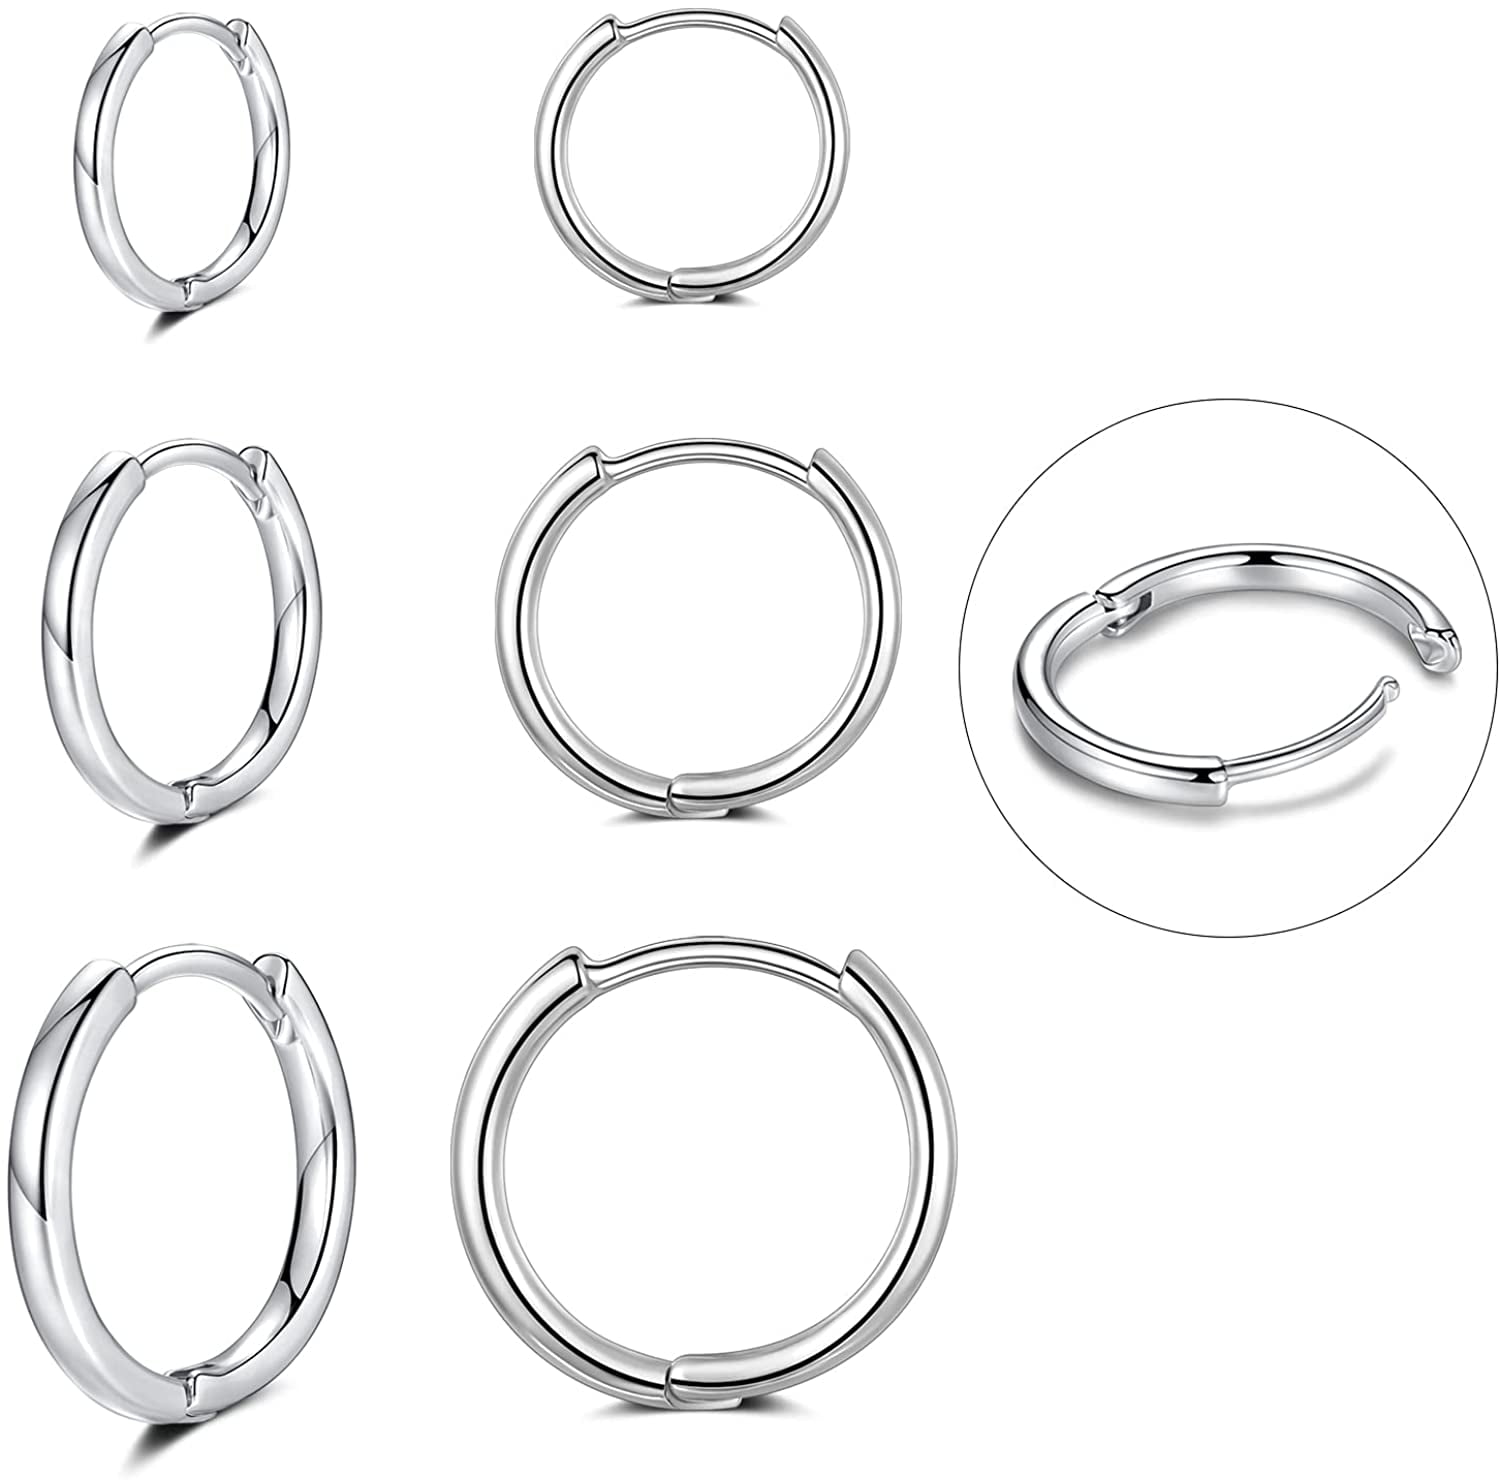 316L Surgical Stainless Steel Hoop Earrings,Mens Hoops Earrings Gold Silver Black Hypoallergenic,8/10/12mm Small Huggie Hoop Earrings Men Women for Cartilage Piercings 